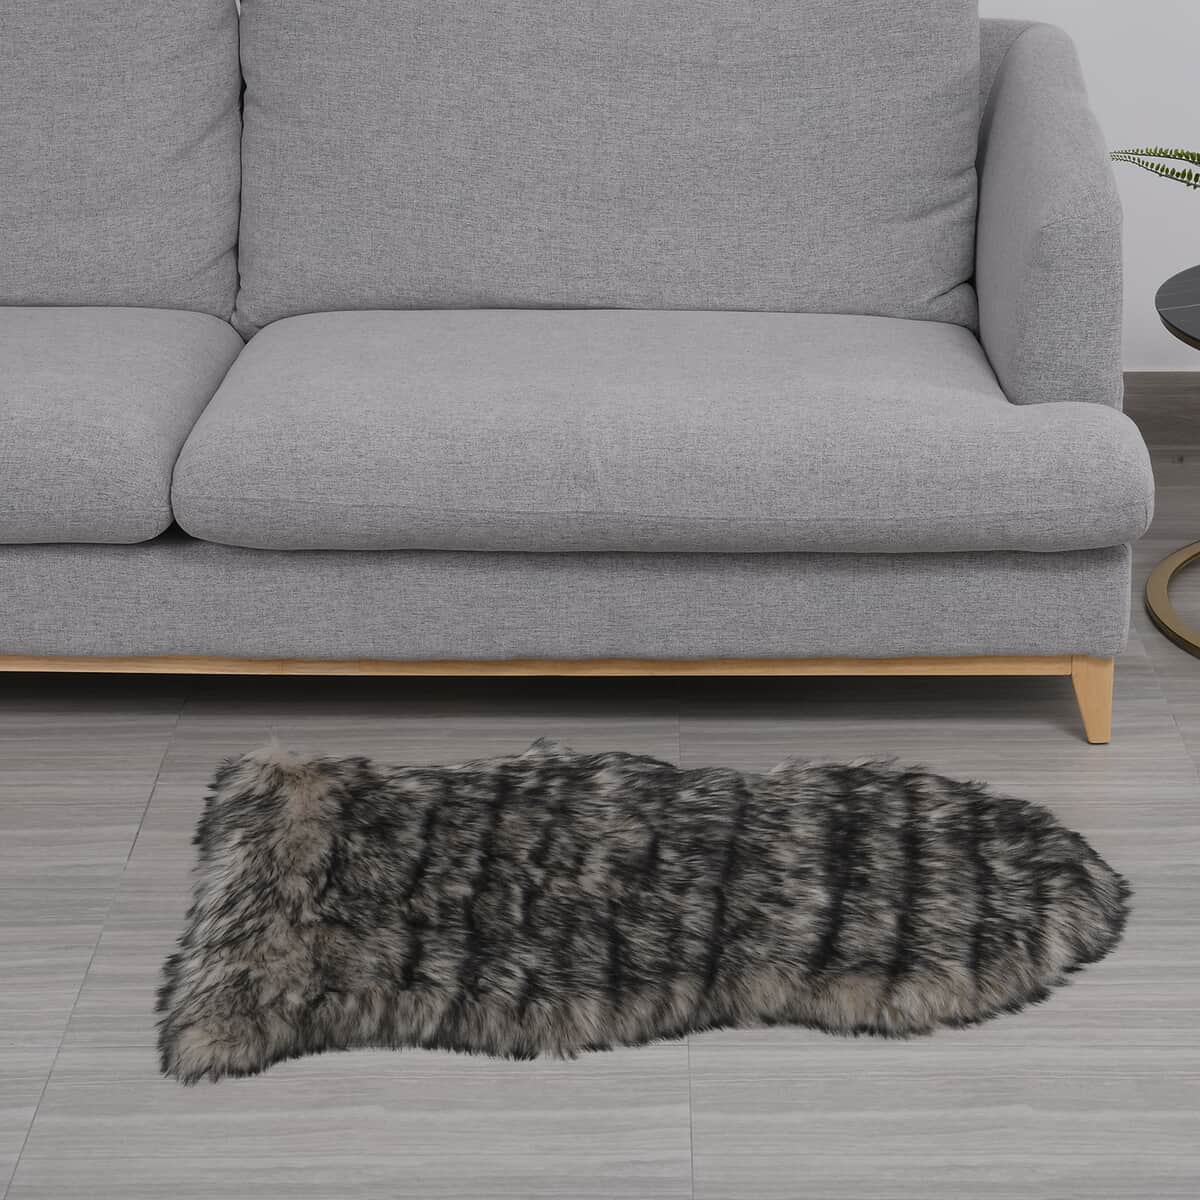 Homesmart Light Gray and Black Faux Fur Carpet | Stair Carpet | Faux Fur Rug | Carpets for Living Room | Bedroom Carpet image number 0